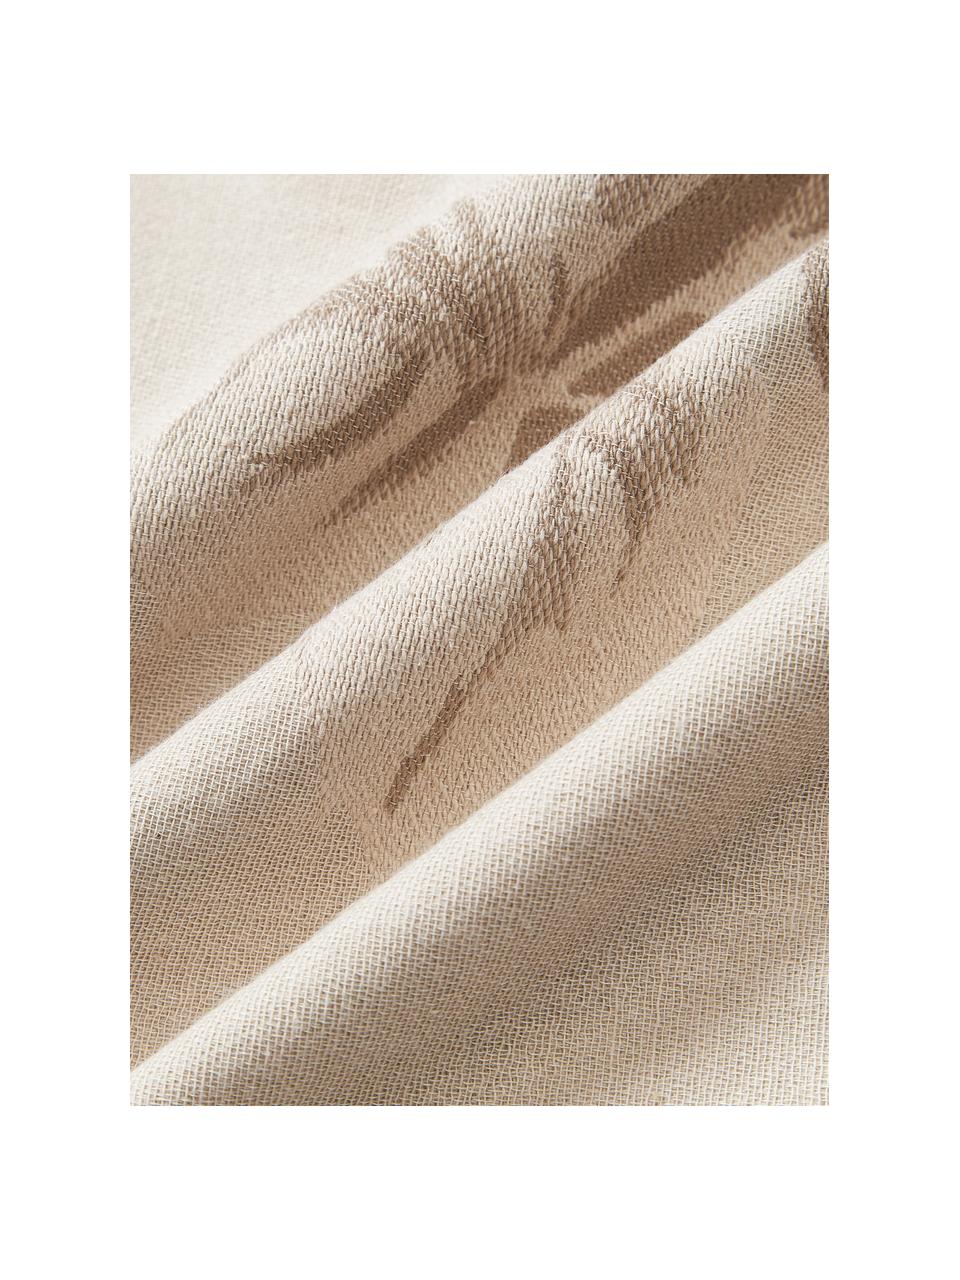 Katoenen kussenhoes Breight met geweven jacquardpatroon, 100% katoen, Lichtbeige, bruin, B 50 x L 50 cm